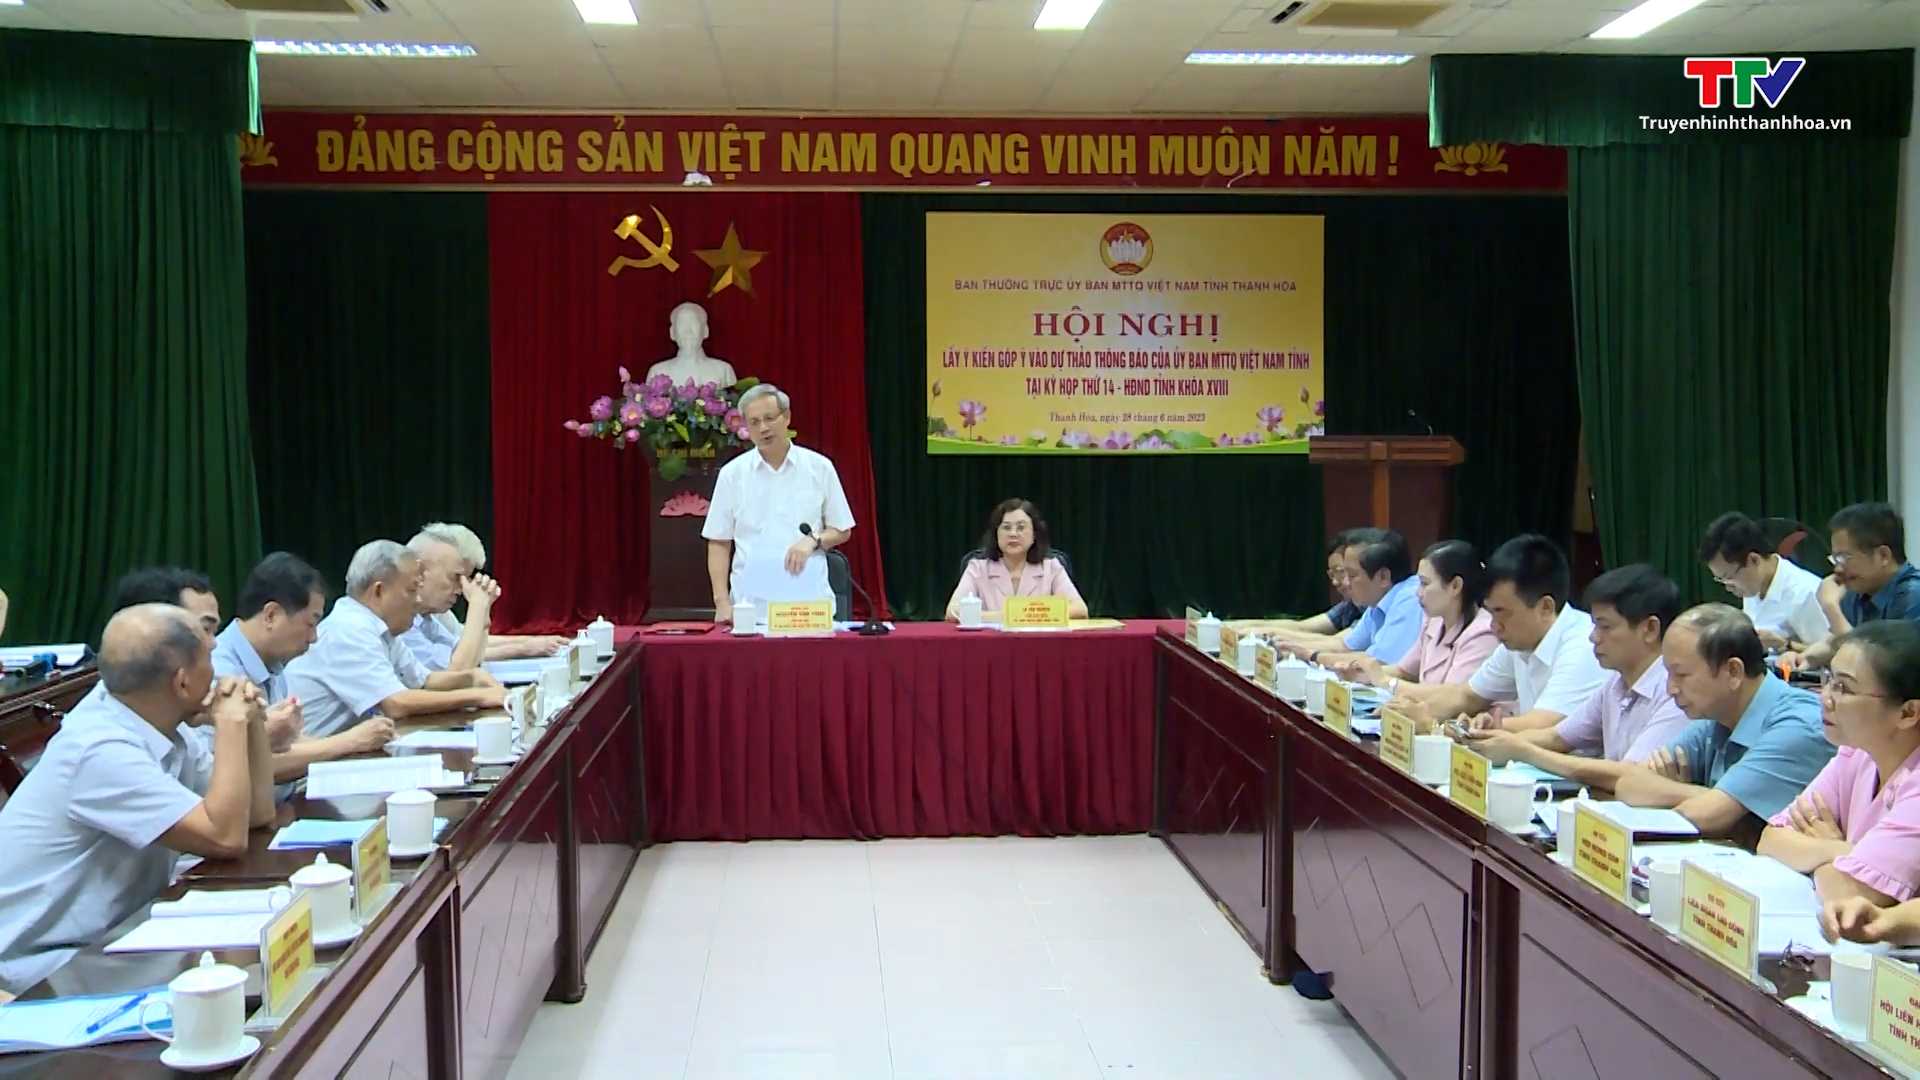 Hội nghị lấy ý kiến góp ý vào dự thảo thông báo của Ủy ban Mặt trận Tổ quốc Việt Nam tỉnh Thanh Hóa tại Kỳ họp thứ 14, Hội đồng nhân dân tỉnh khóa XVIII - Ảnh 5.